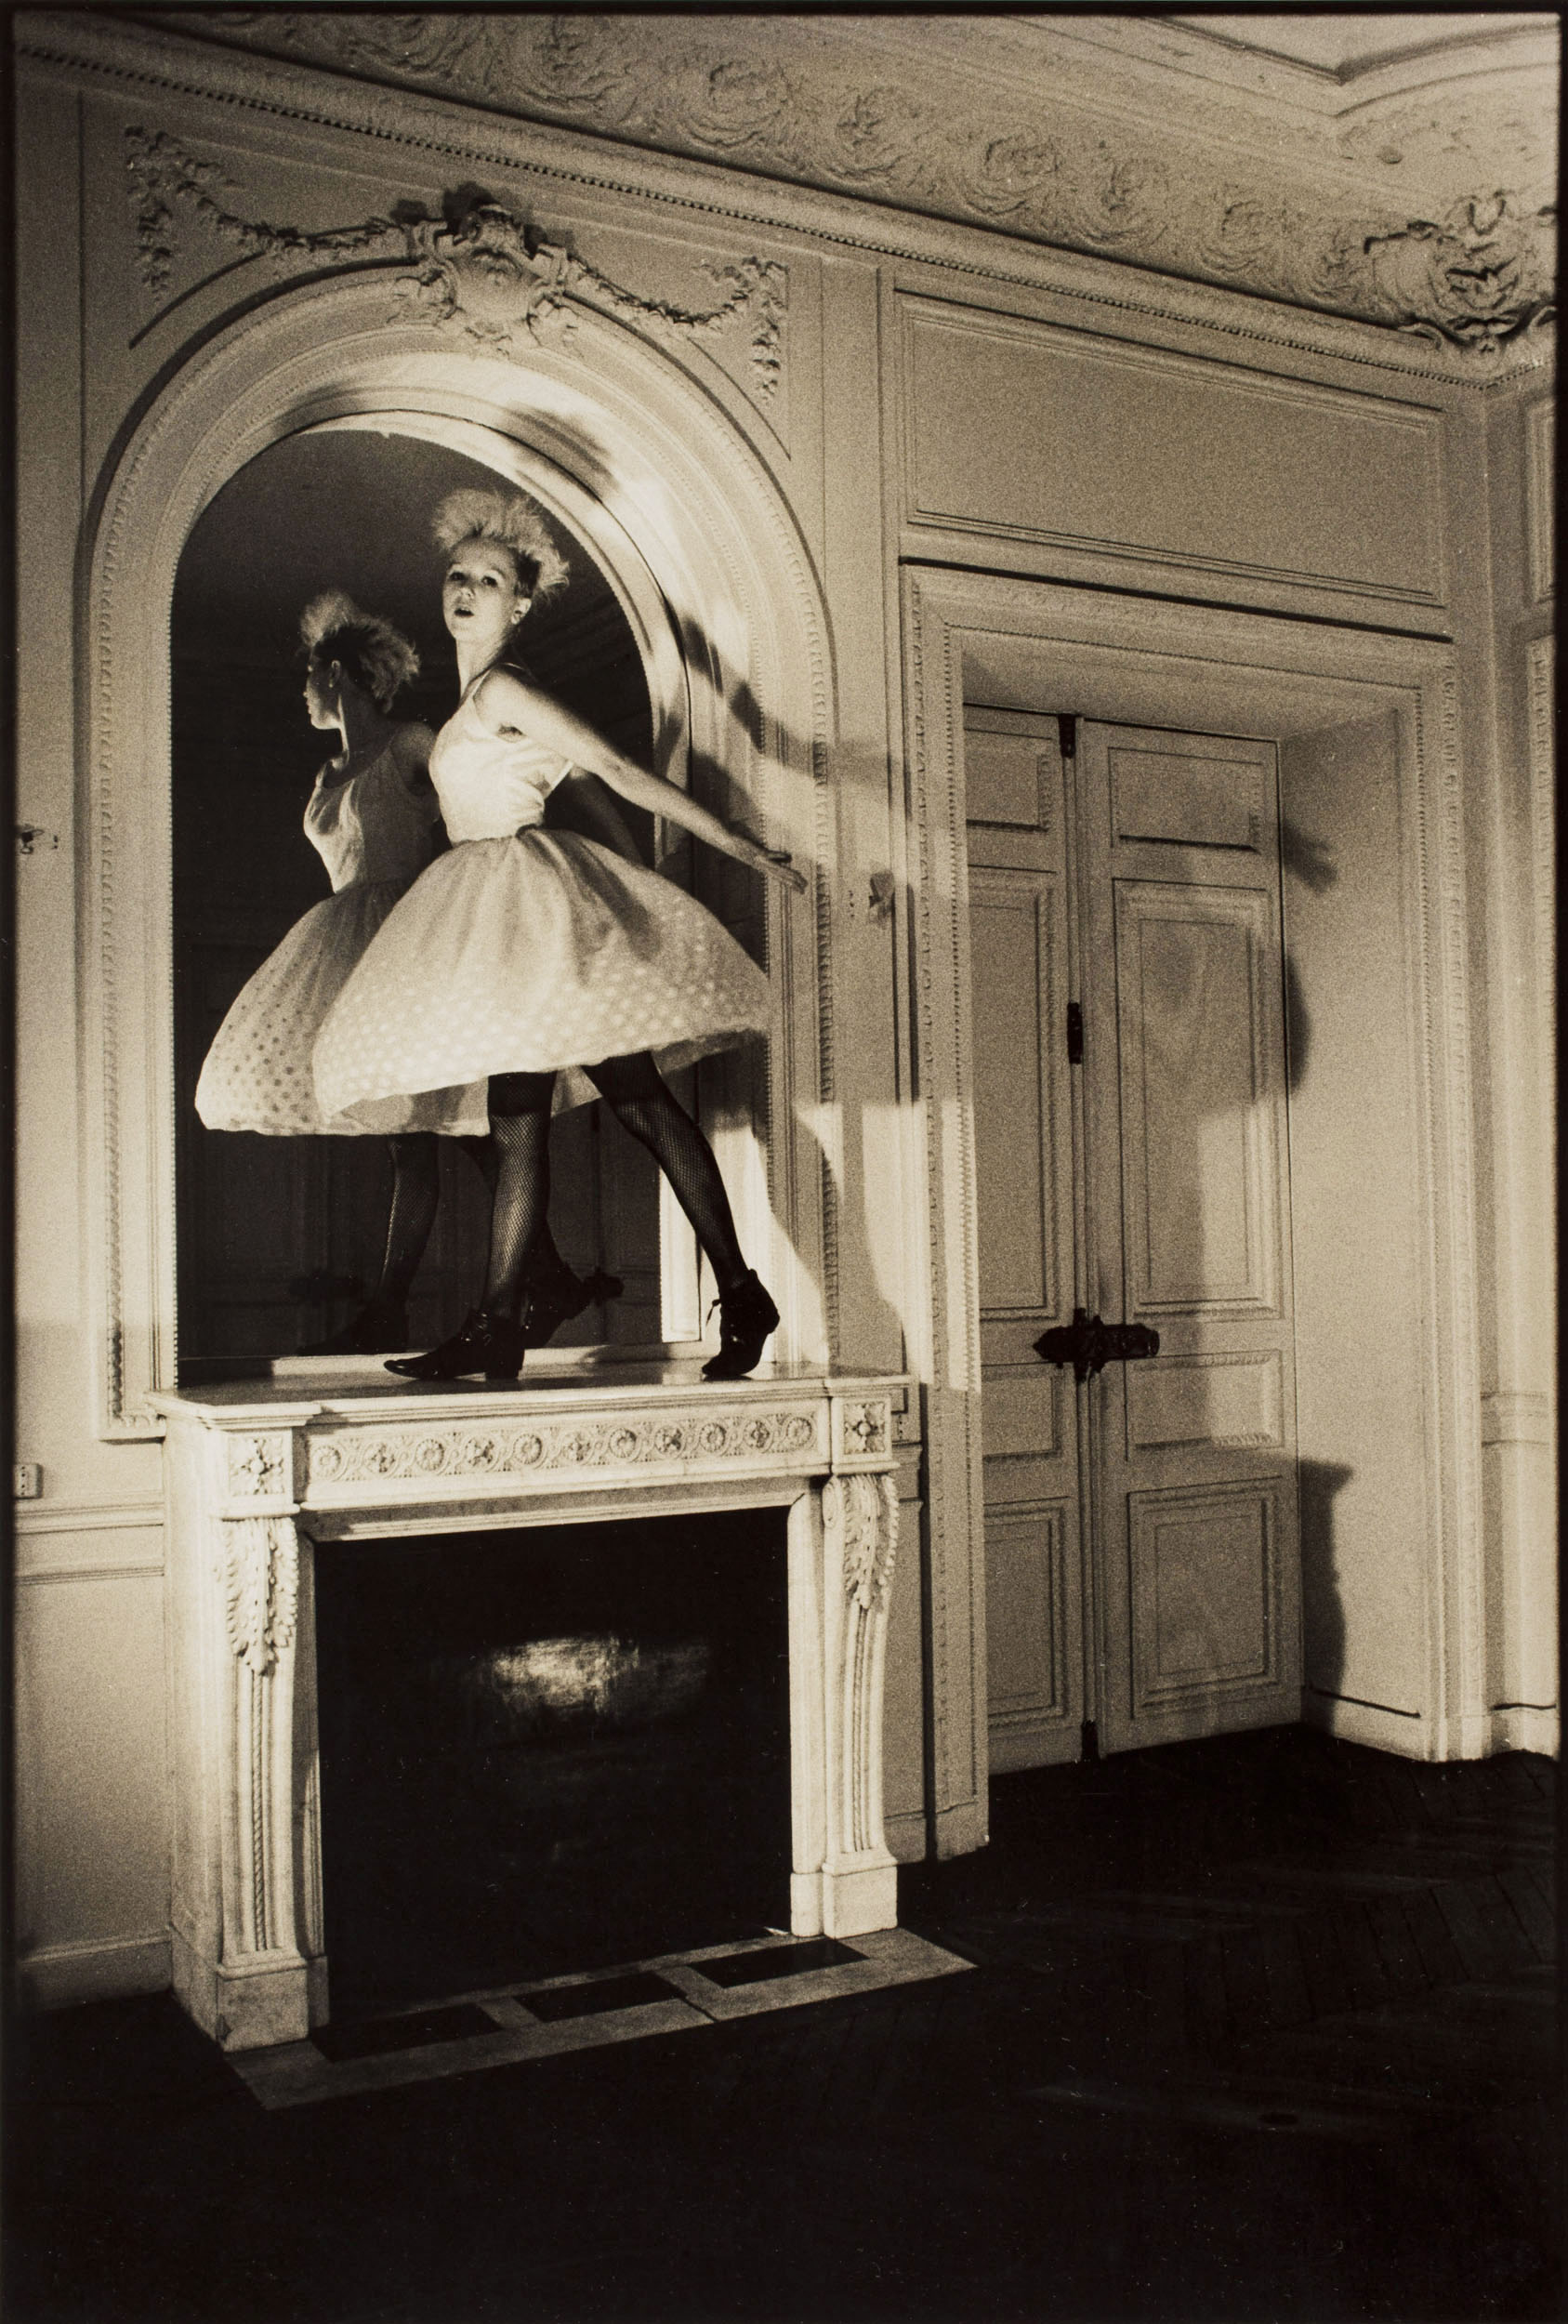 Portrait d'une danseuse debout en équilibre sur la cheminée d'un appartement haussmannien à Paris. Recherche personnelle - Argentique - 1984. Tirage vintage aux tons chauds. Lumière du jour et projecteurs Cremer.